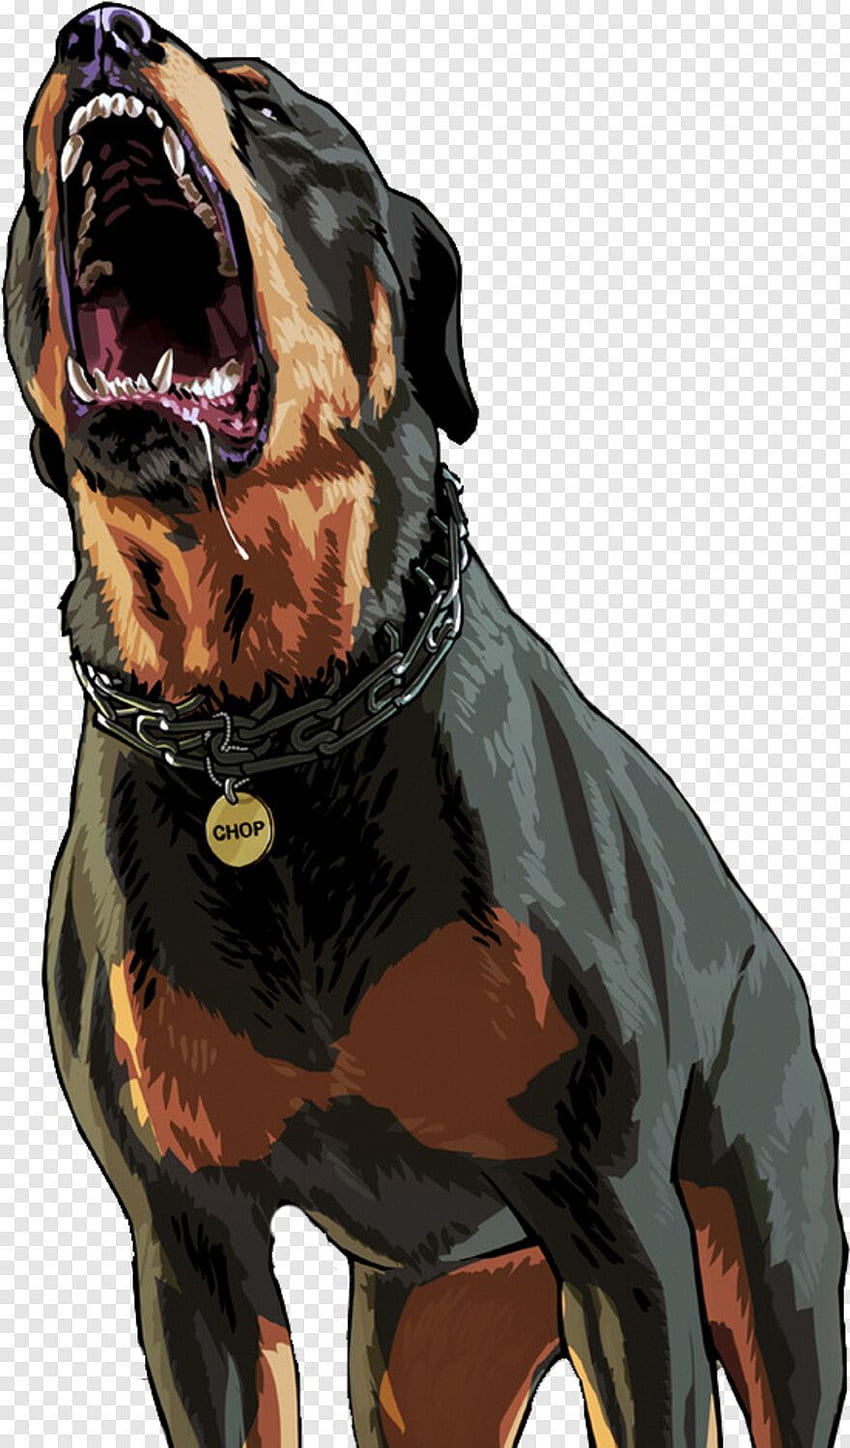 Rottweiler dog HD wallpapers | Pxfuel